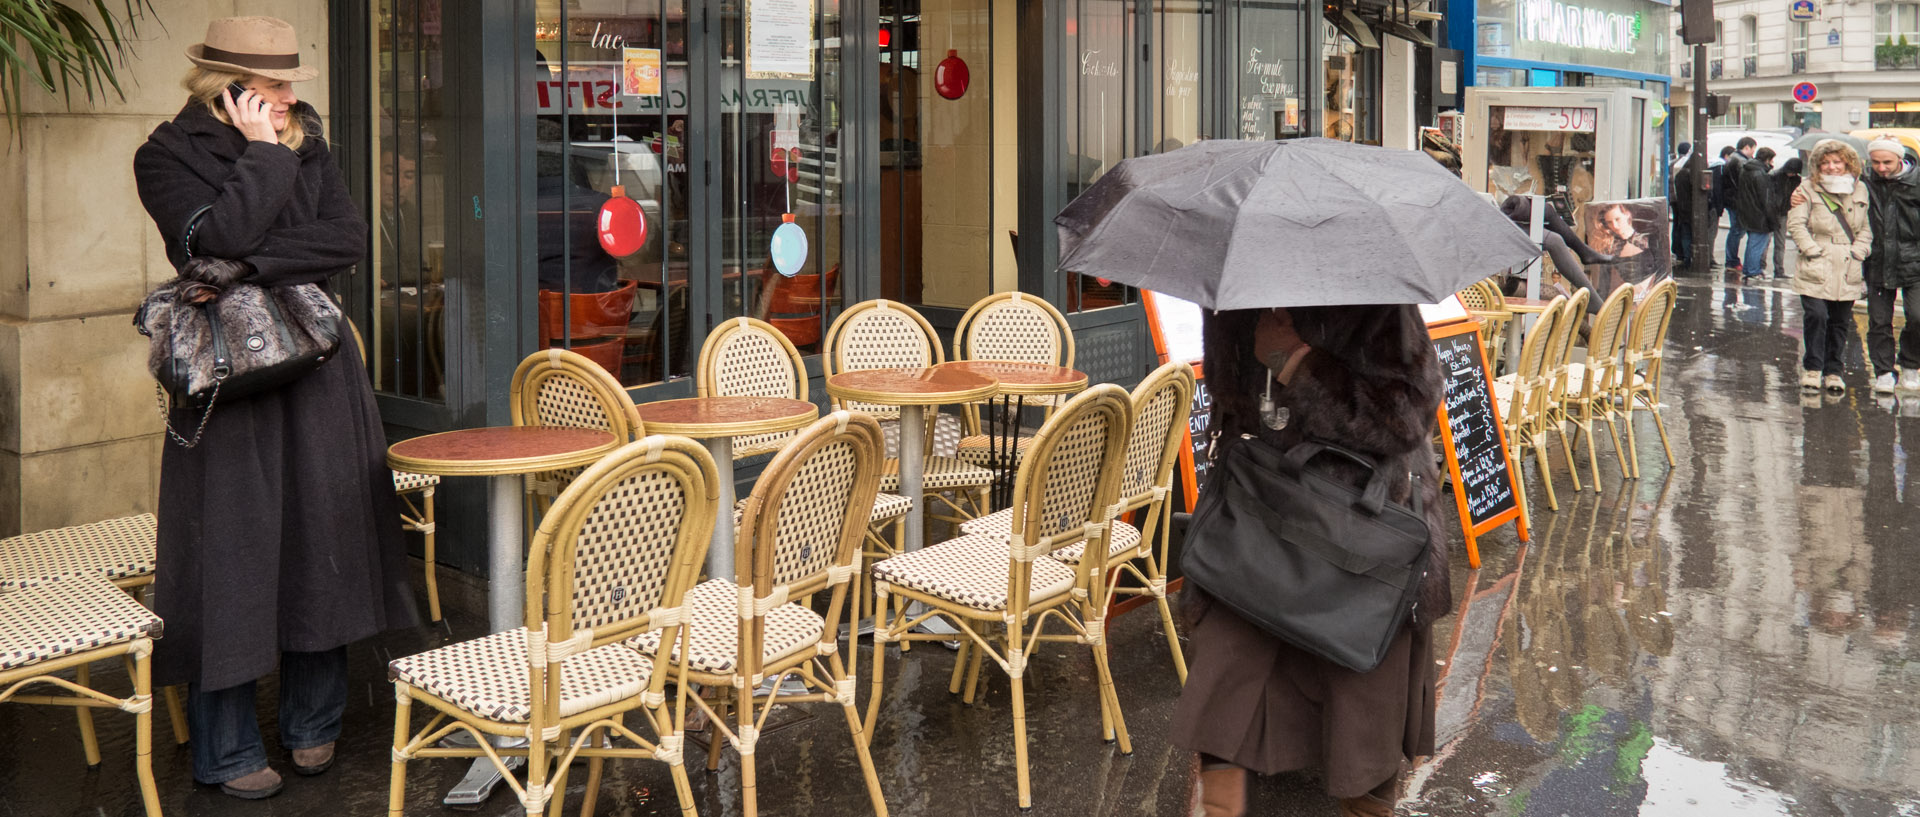 Terrasse de café sous la pluie, rue de Dunkerque, à Paris.